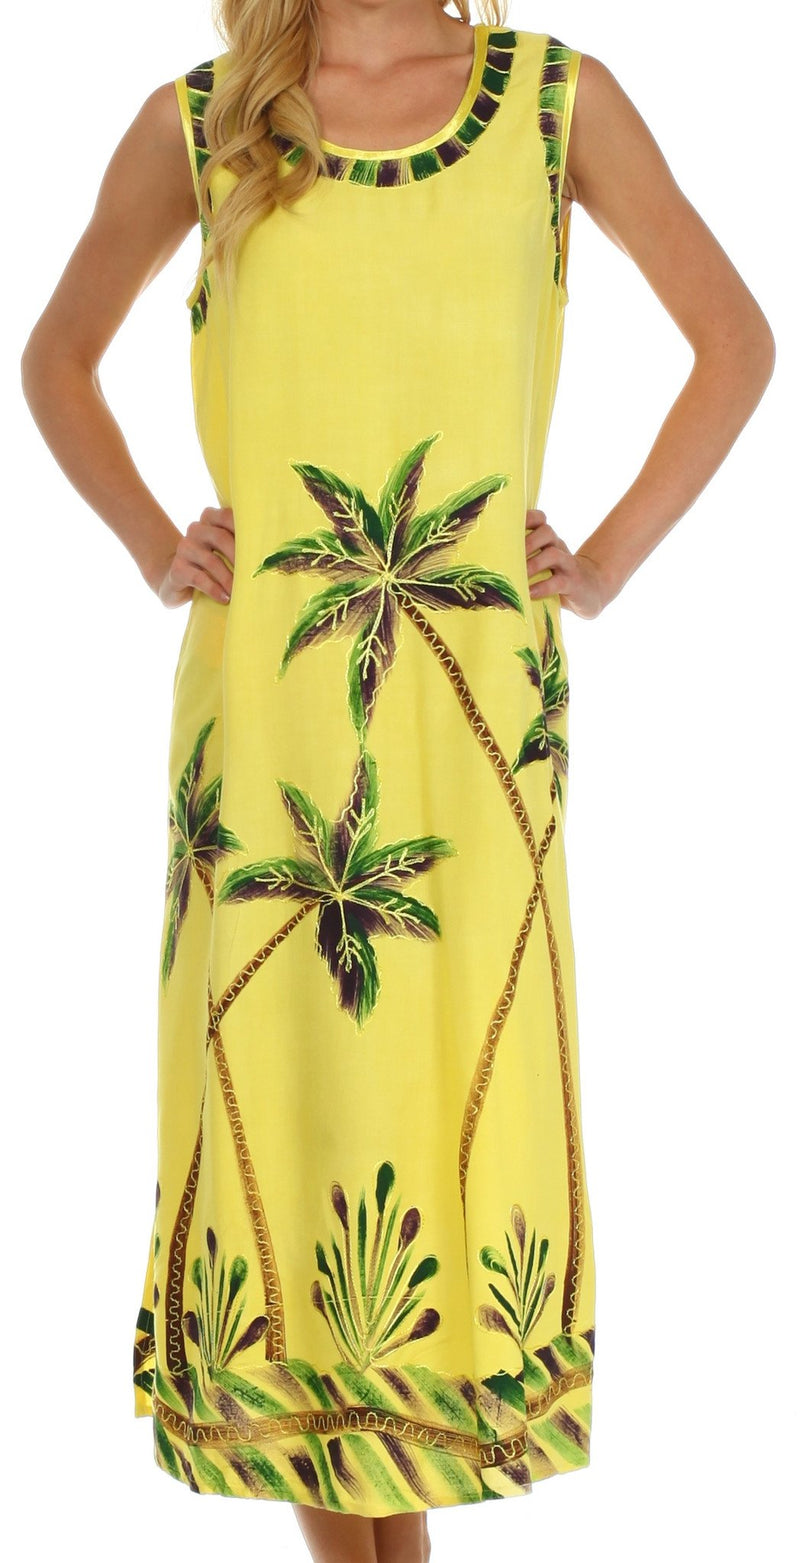 Sakkas Bali Palm Tank Dress